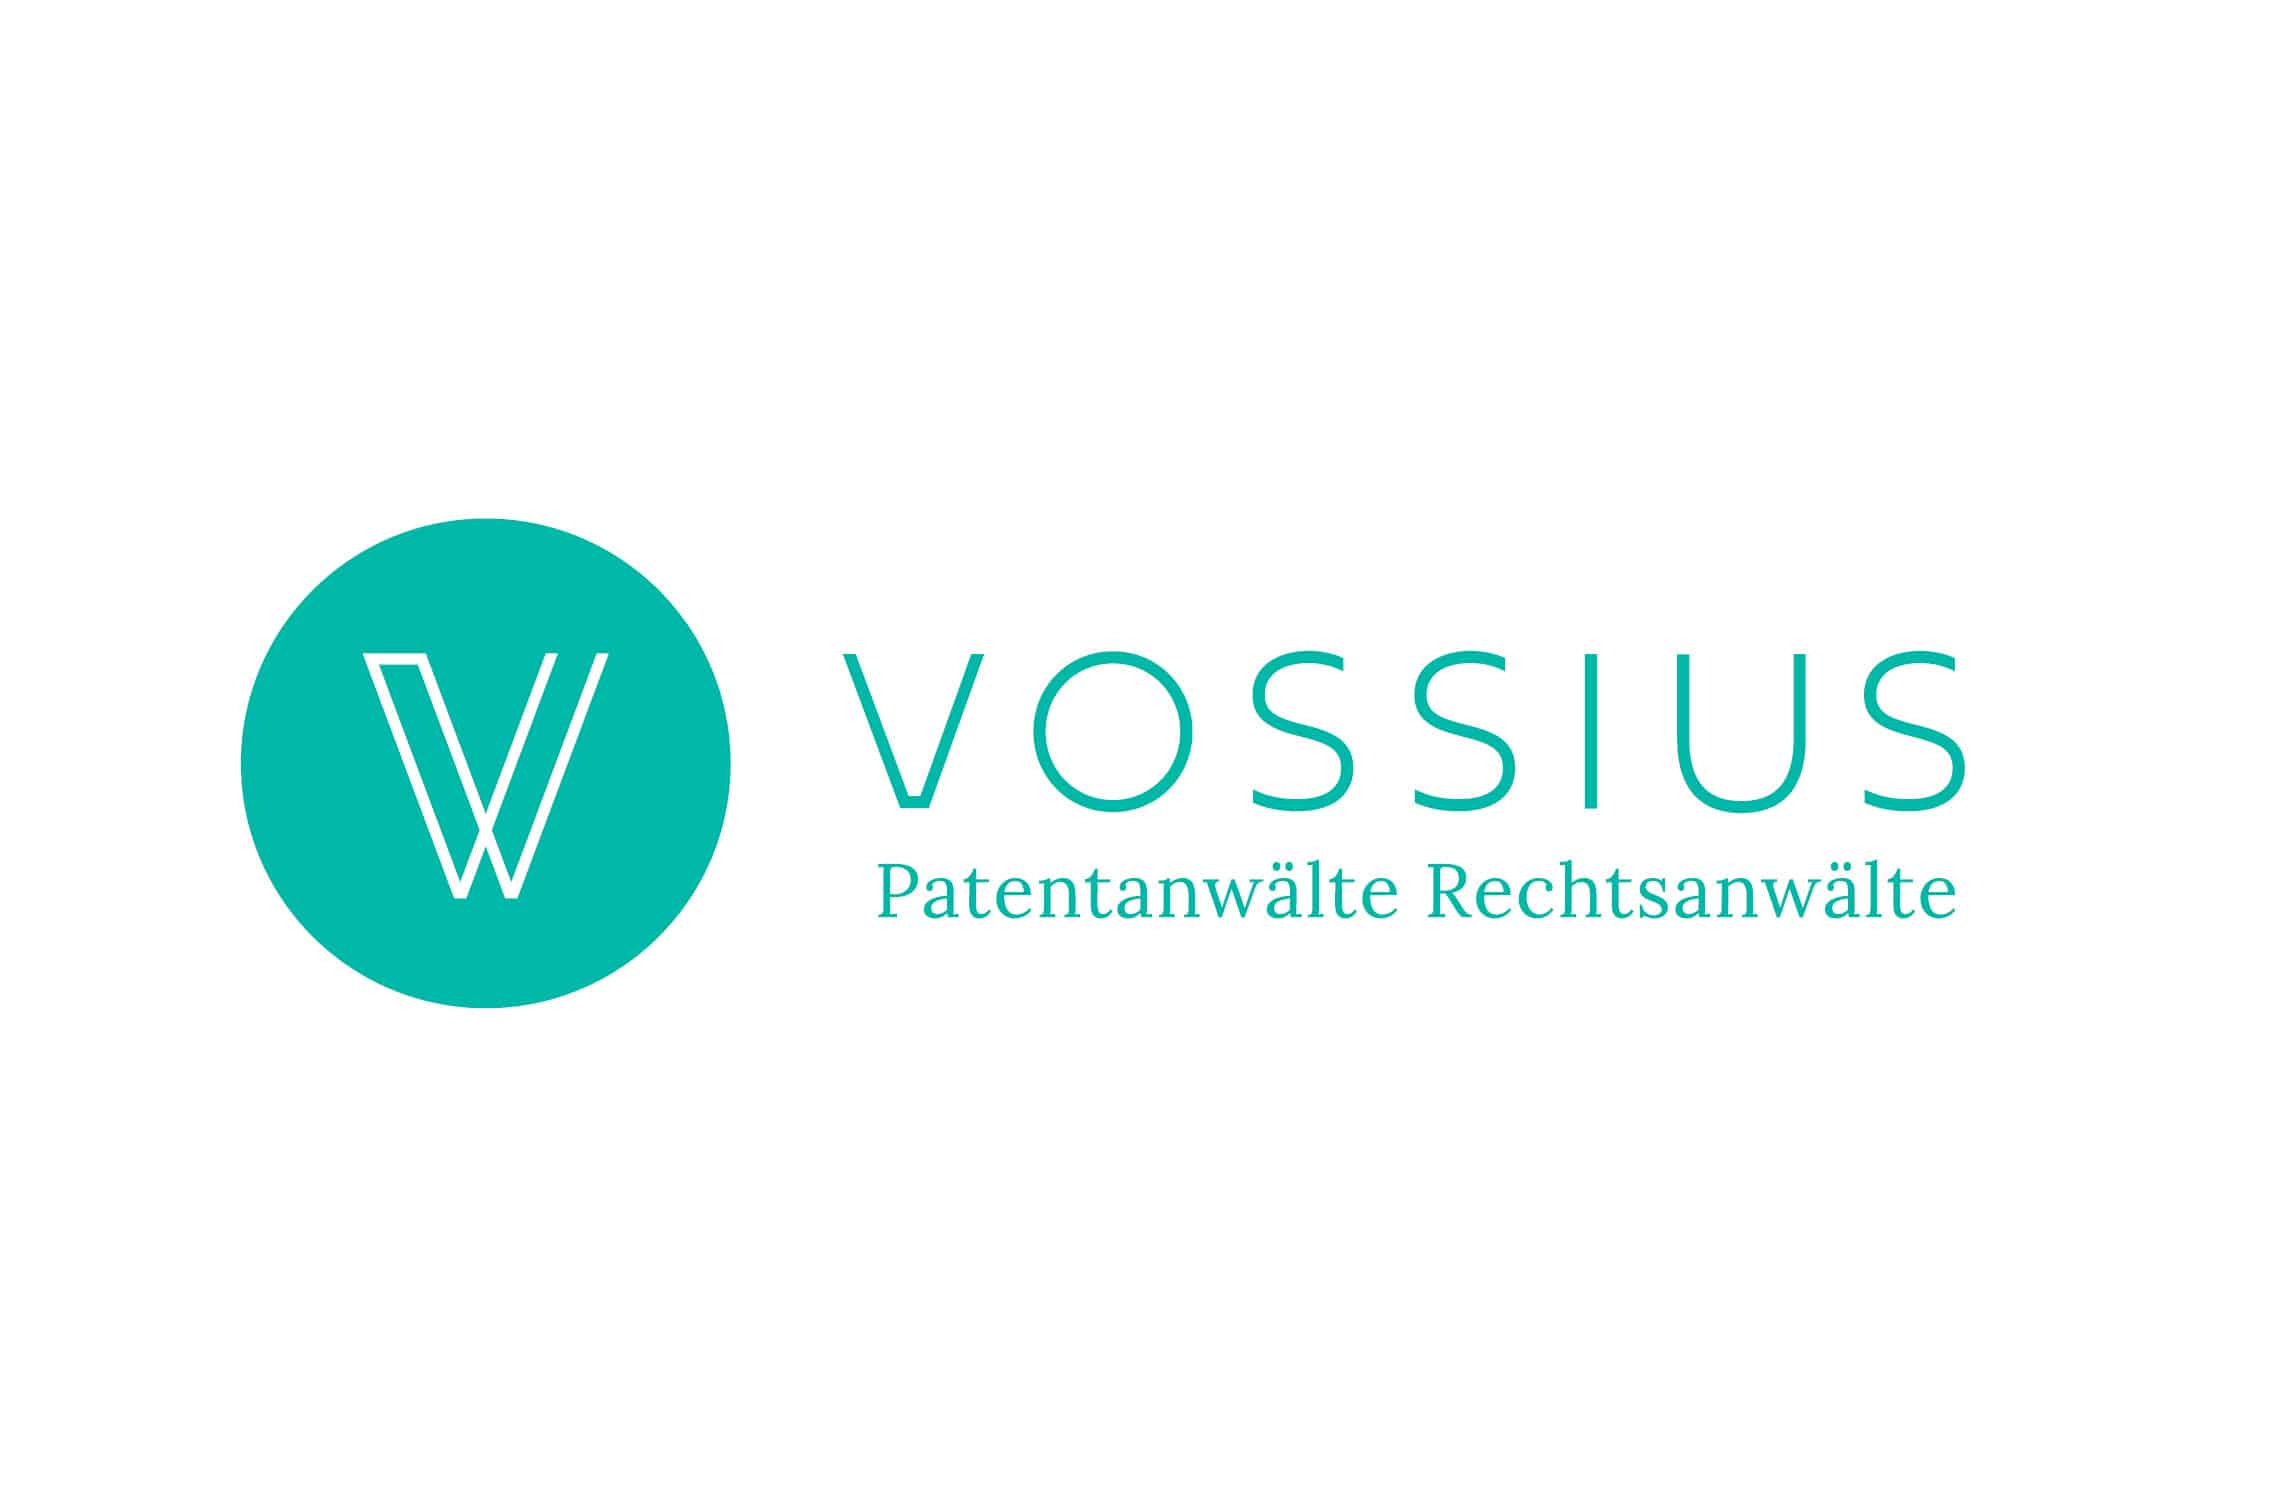 Voissius logo